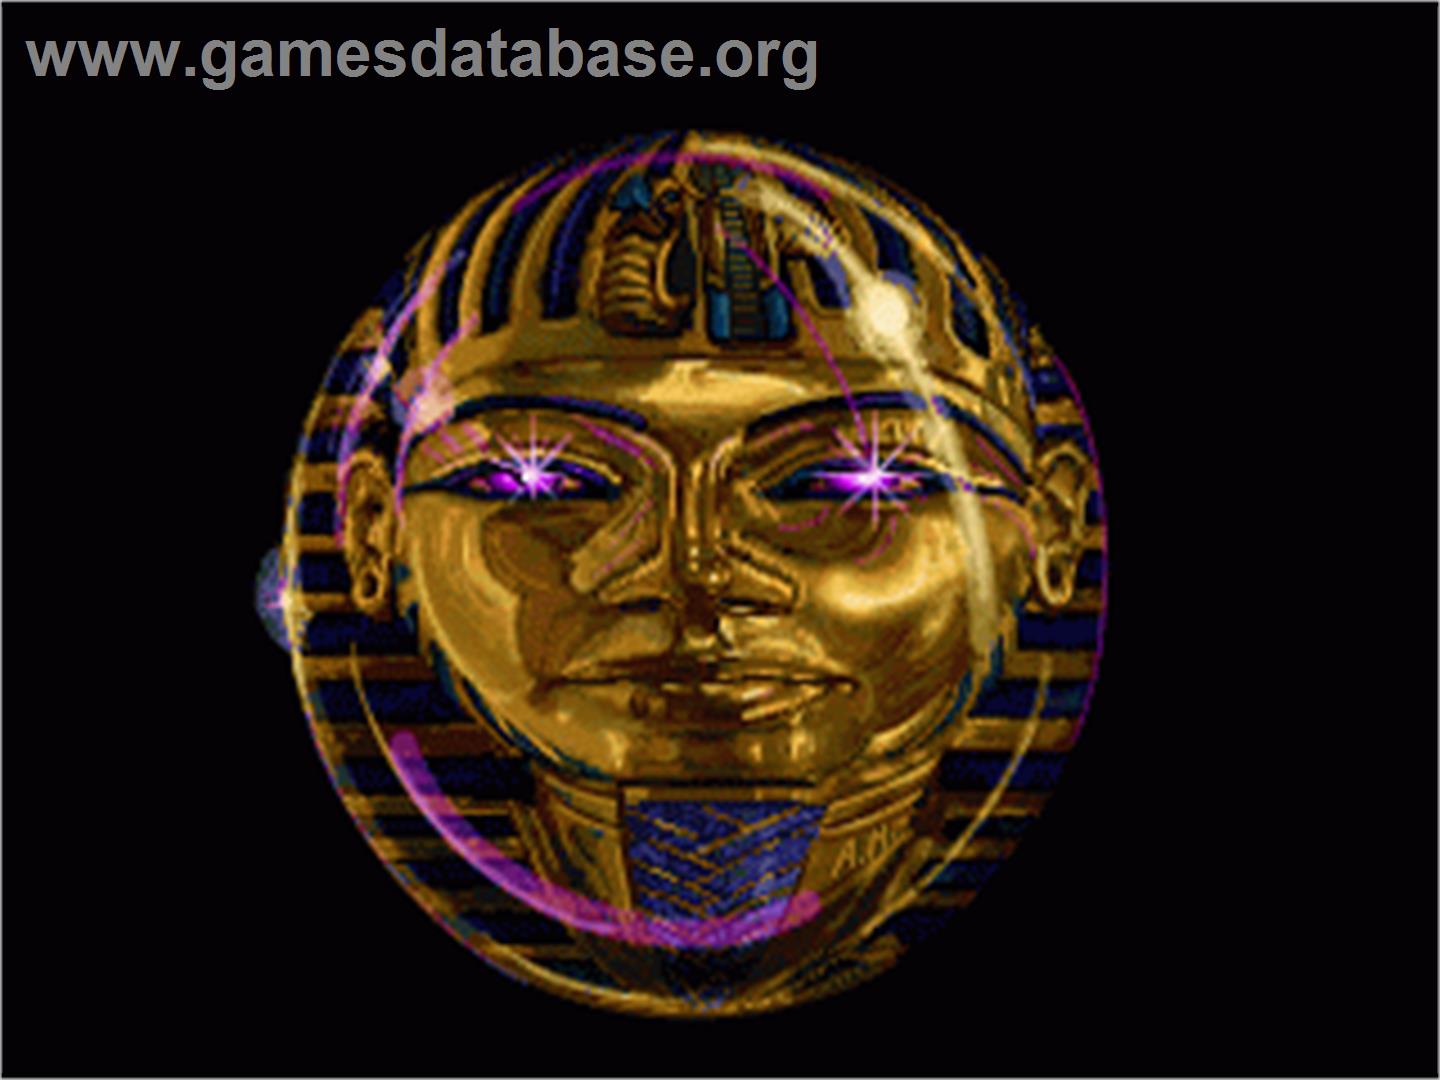 Mars Sample Program: Egypt - Sega 32X - Artwork - Title Screen